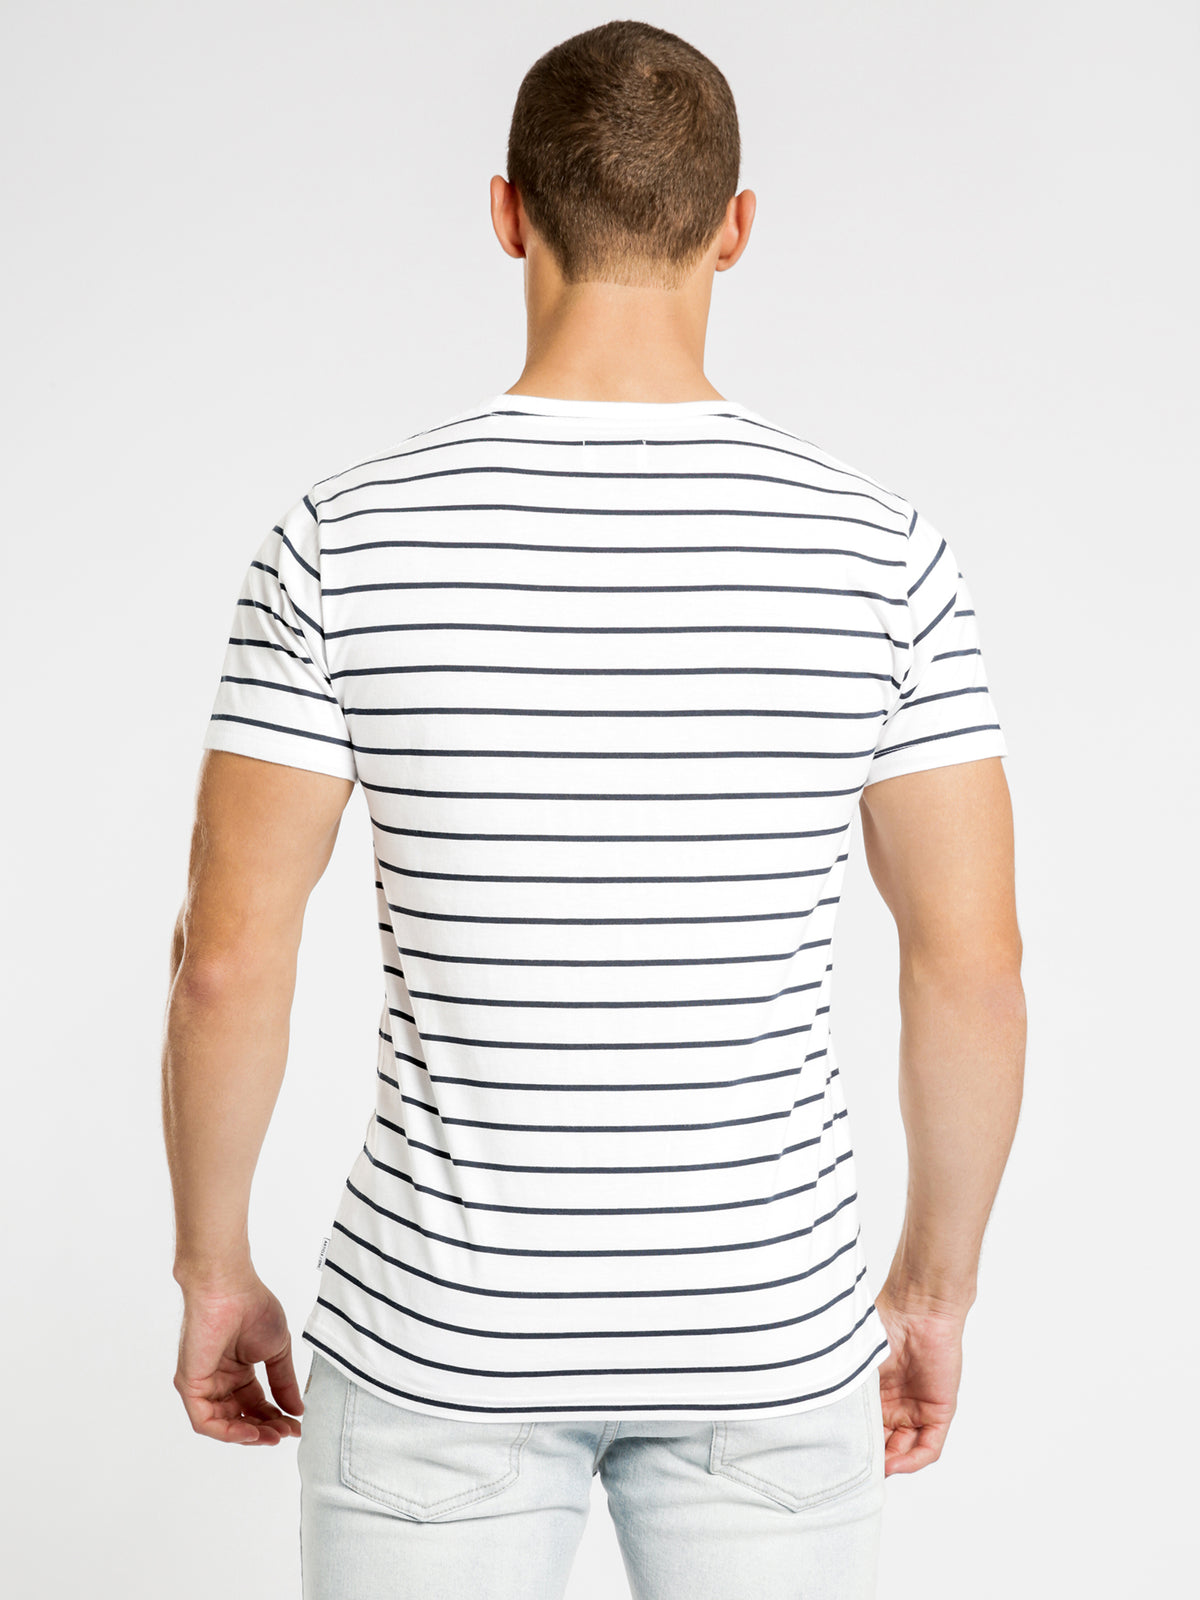 Casper T-Shirt in Navy &amp; White Stripe